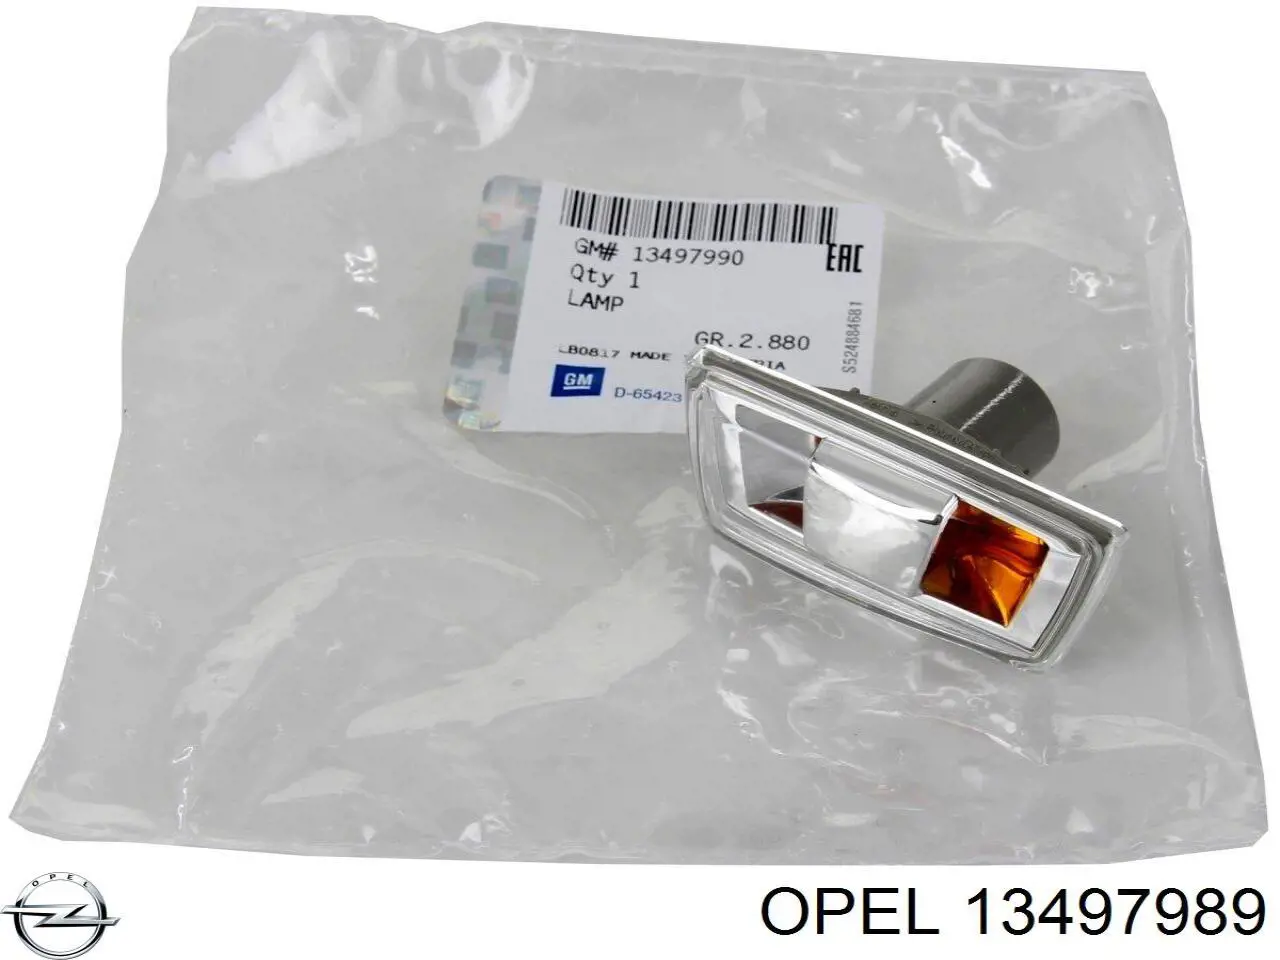 13497989 Opel luz intermitente guardabarros derecho